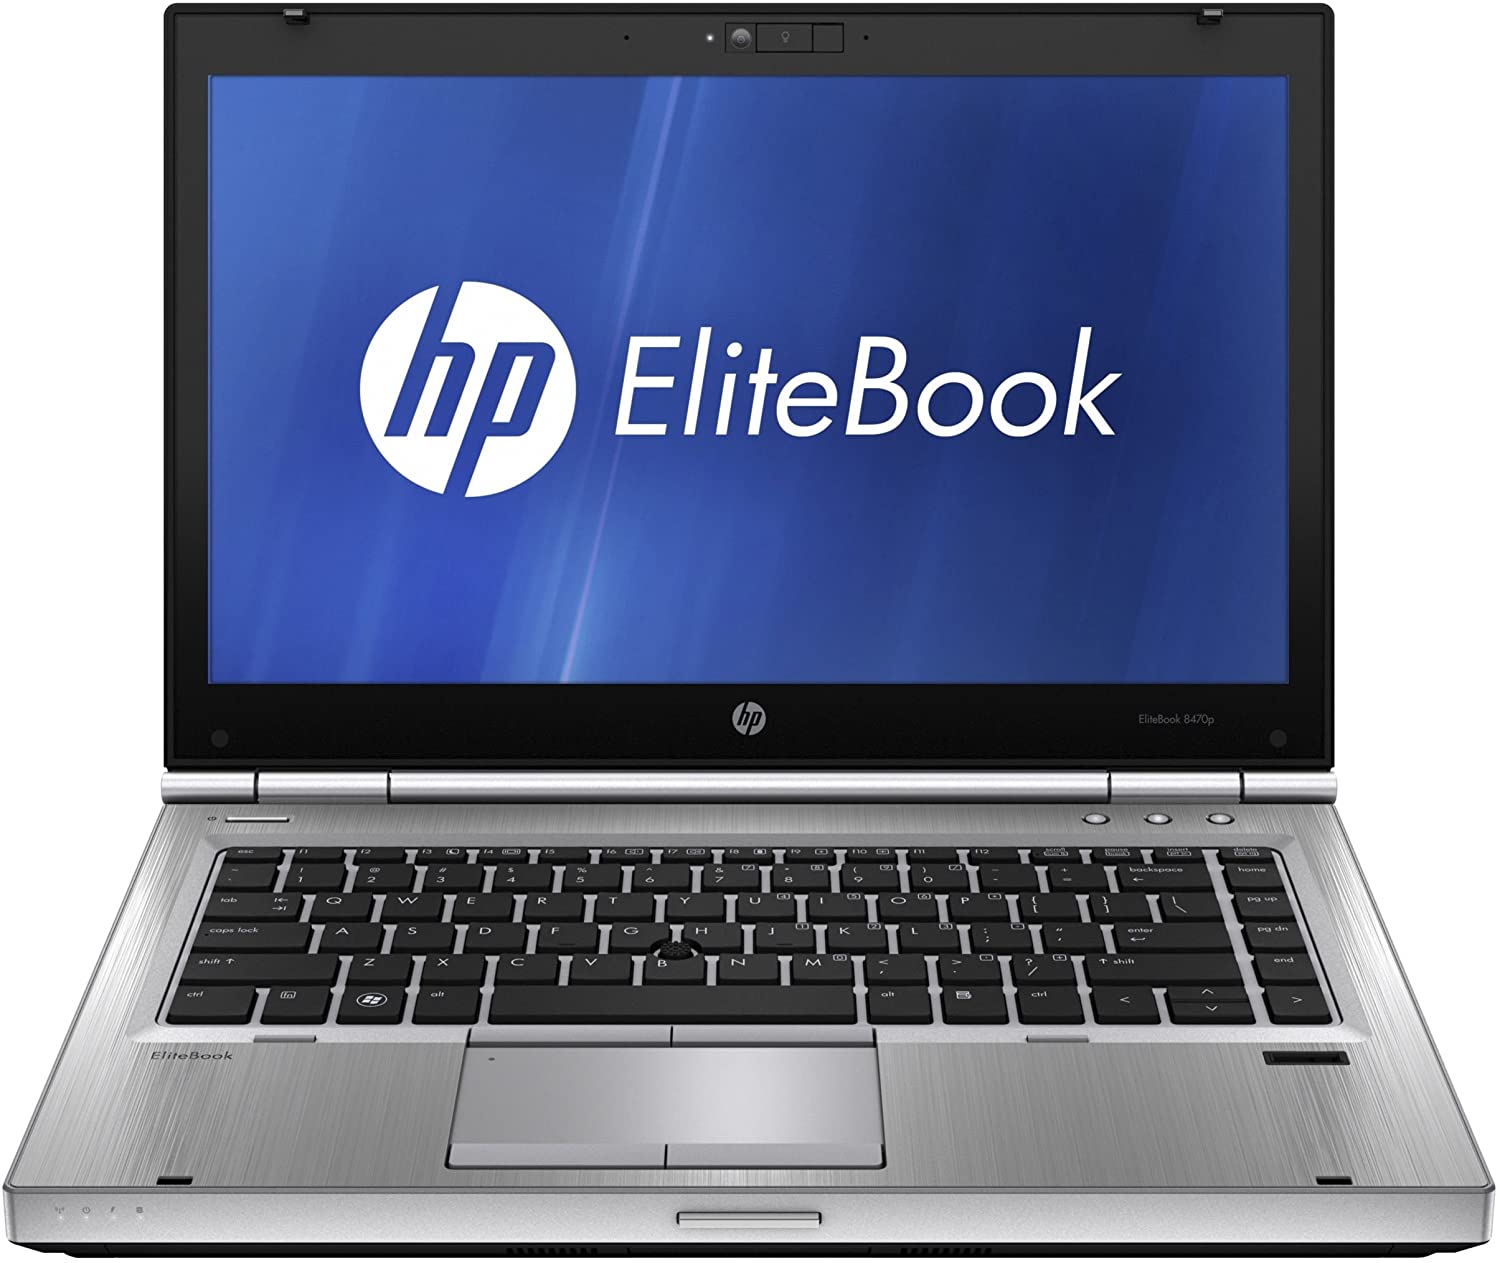 HP EliteBook - серия ноутбуков